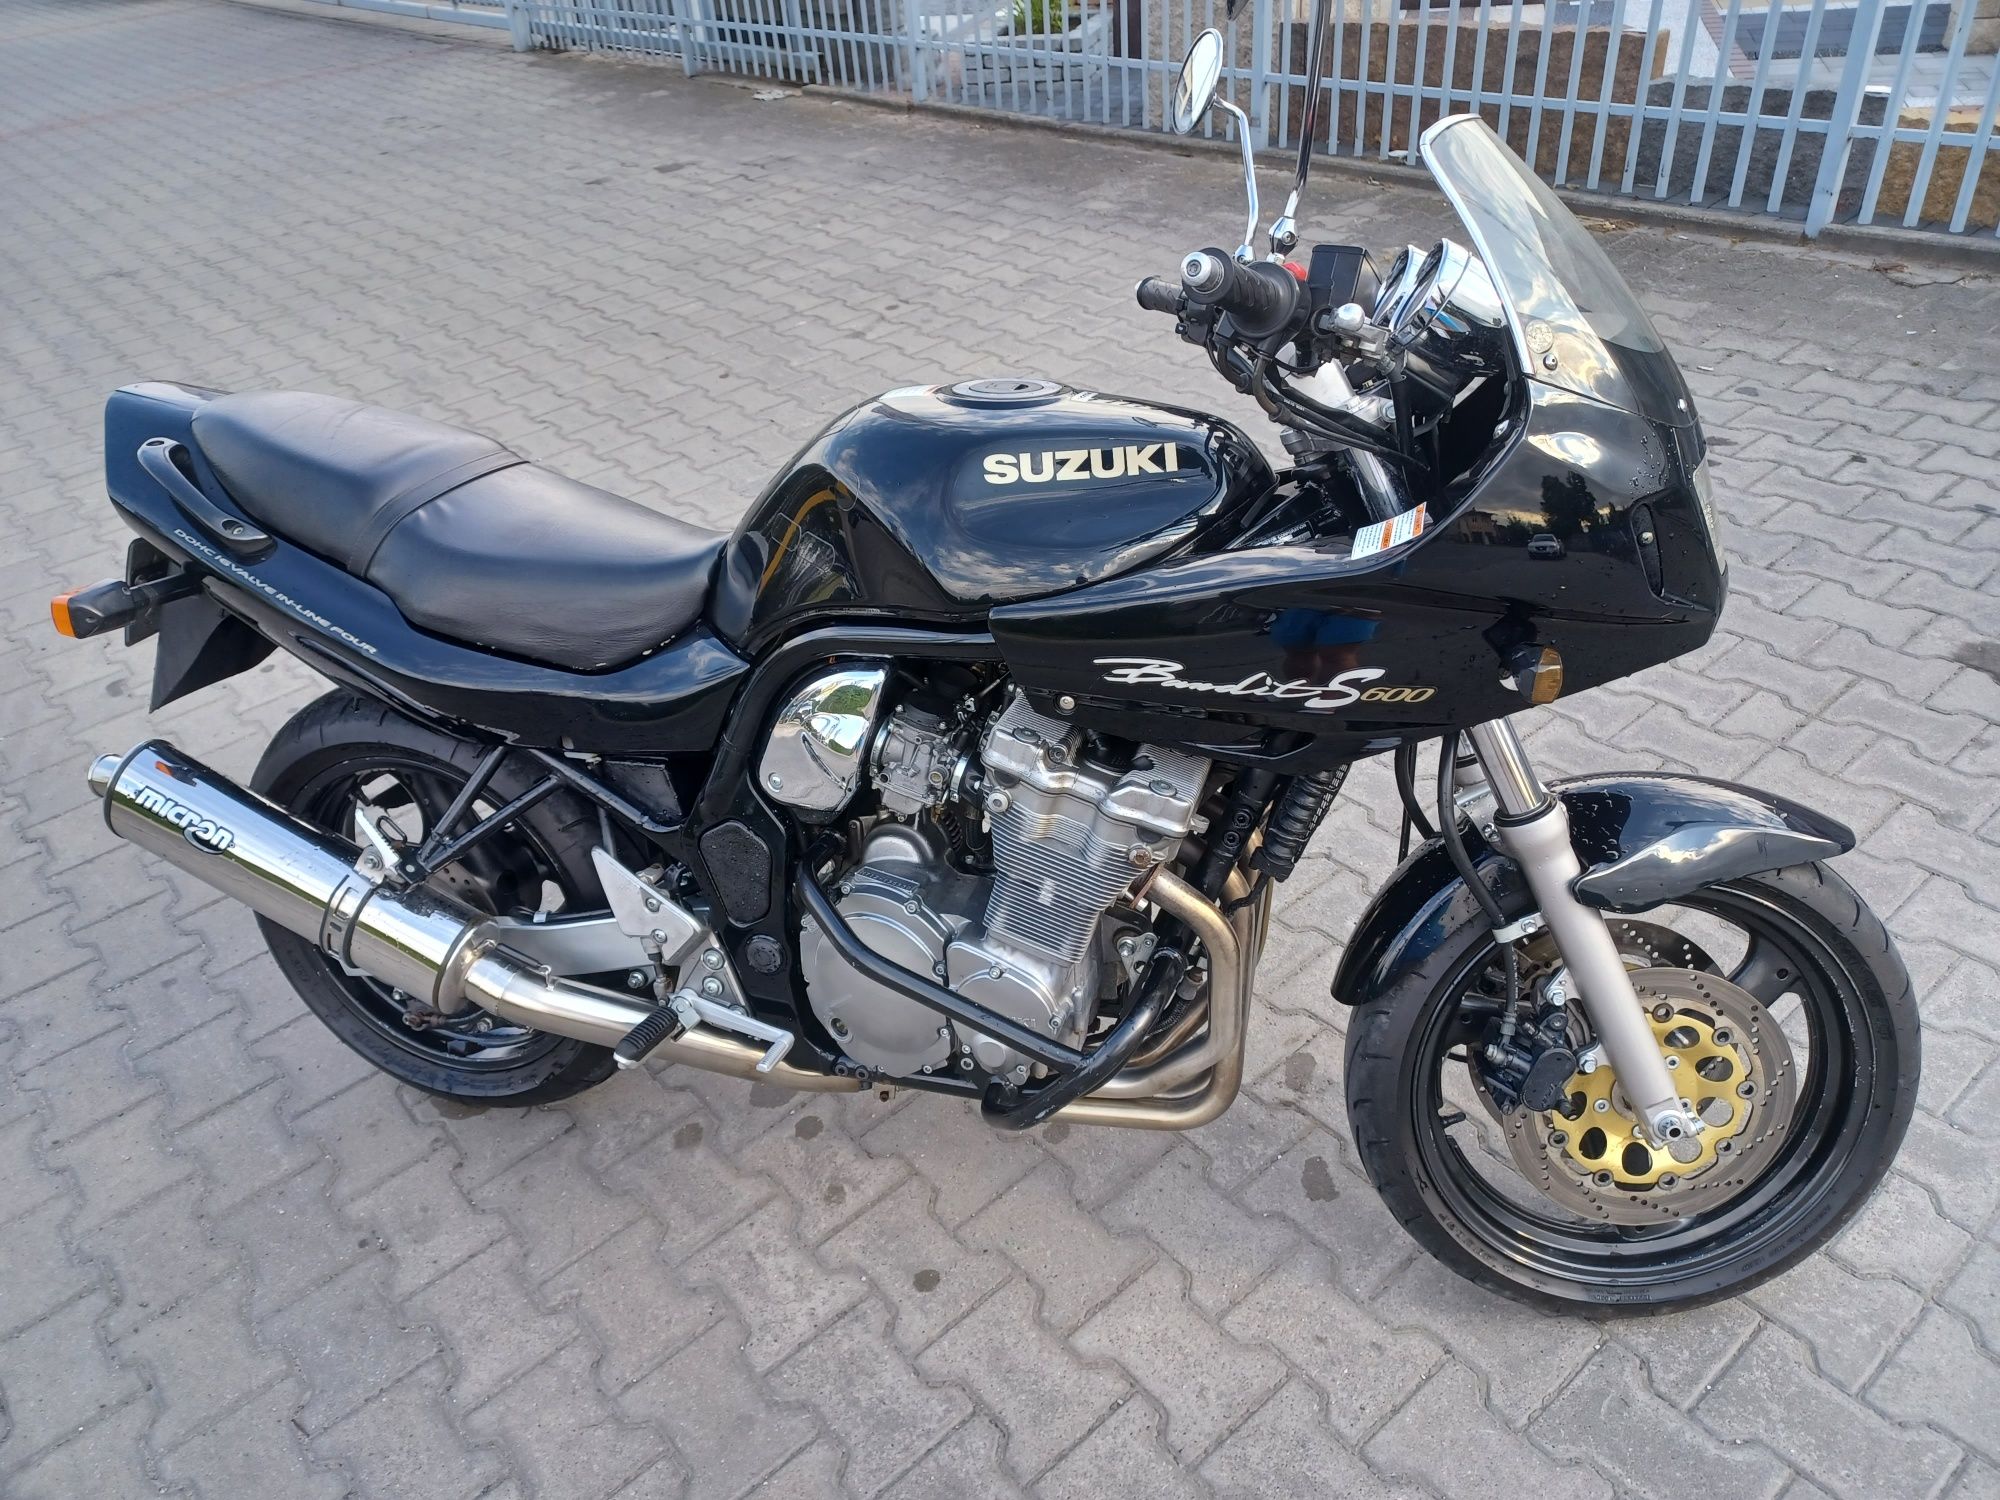 Suzuki Bandit 600s Bdb stan